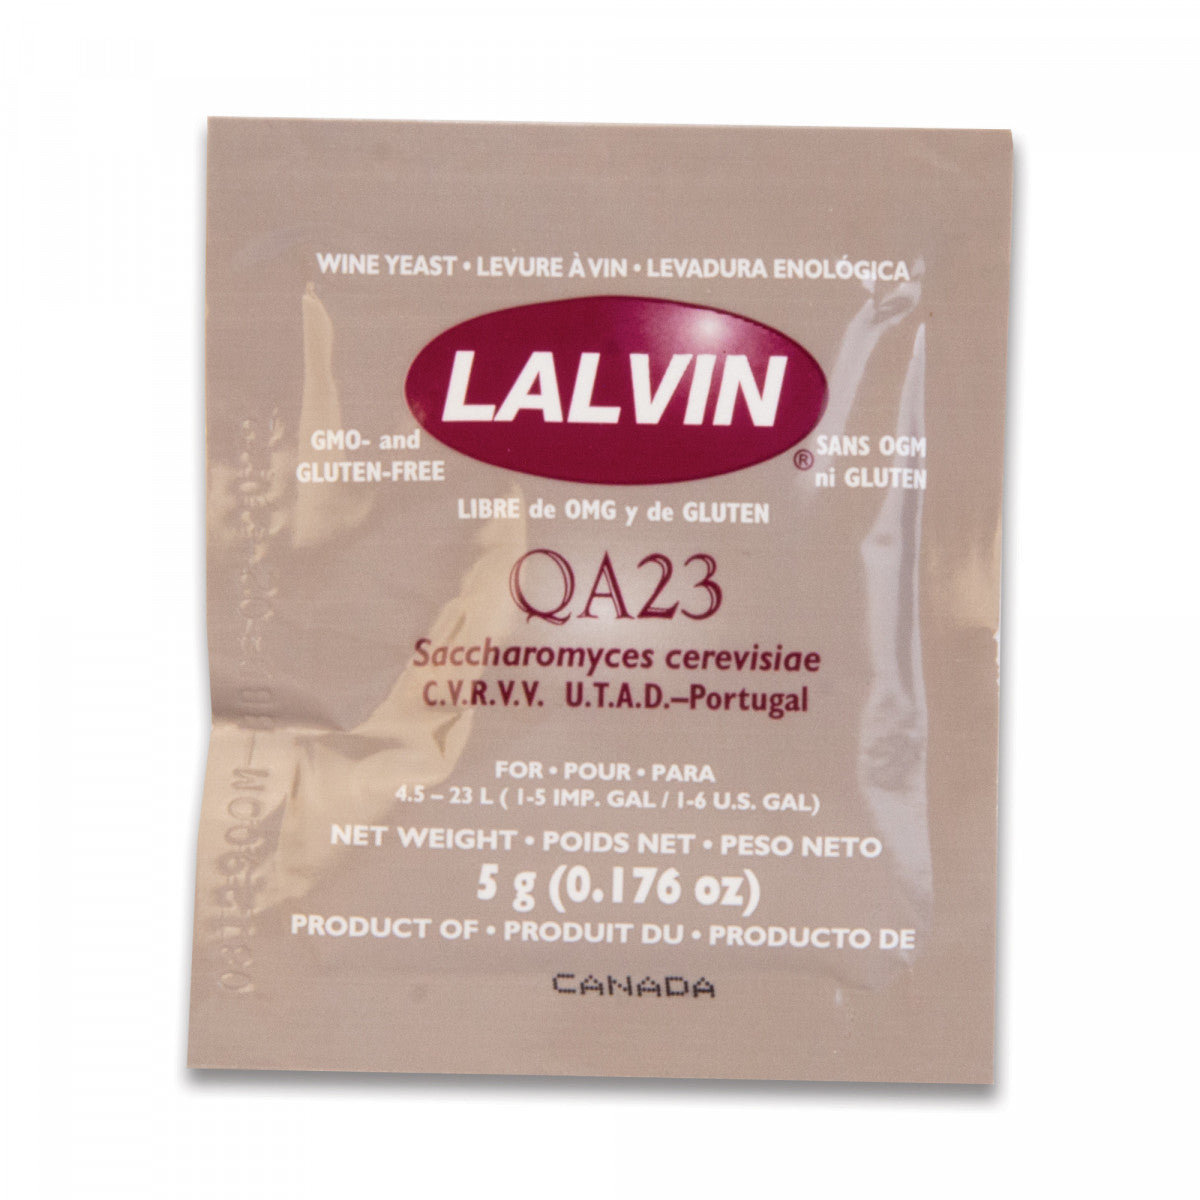 Lalvin QA 23